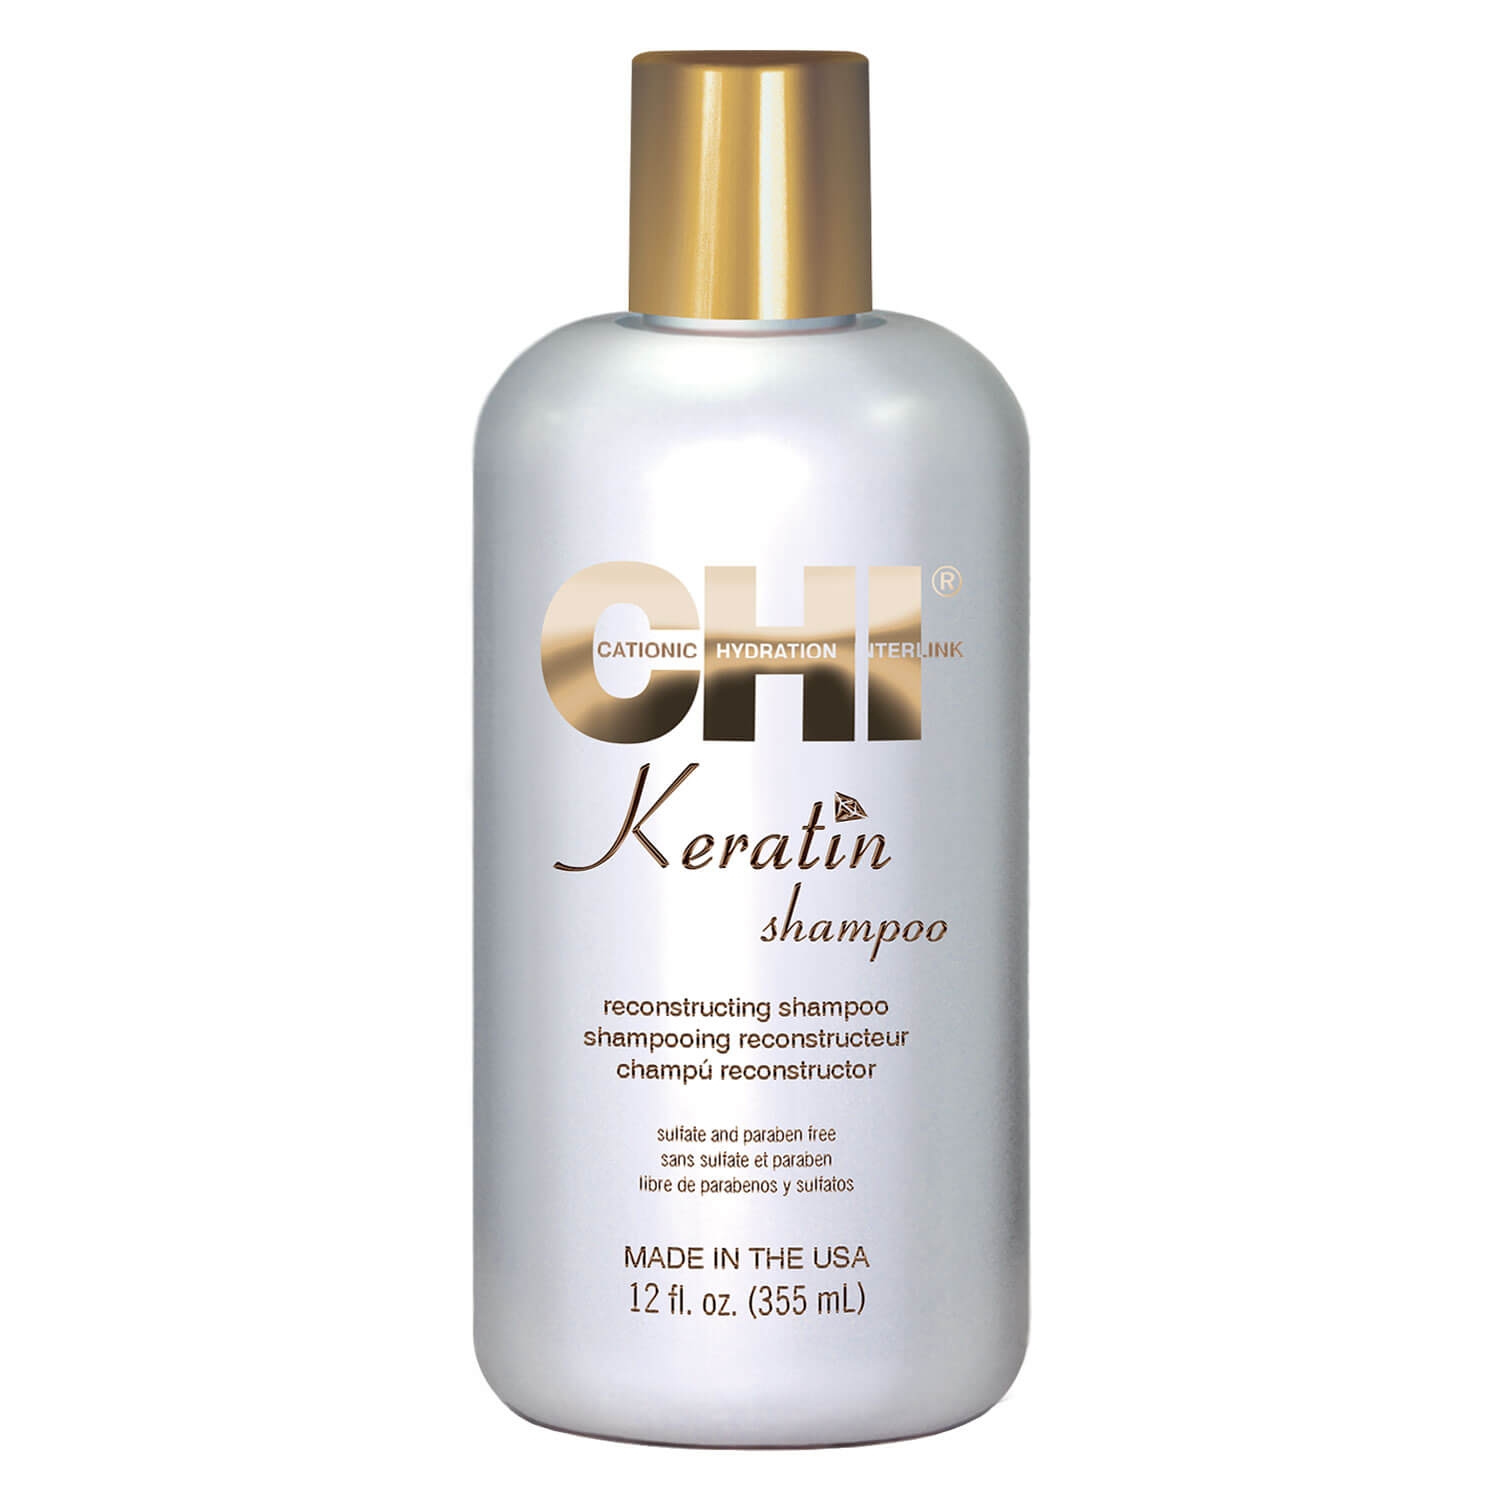 Product image from CHI Keratin - Keratin Shampoo